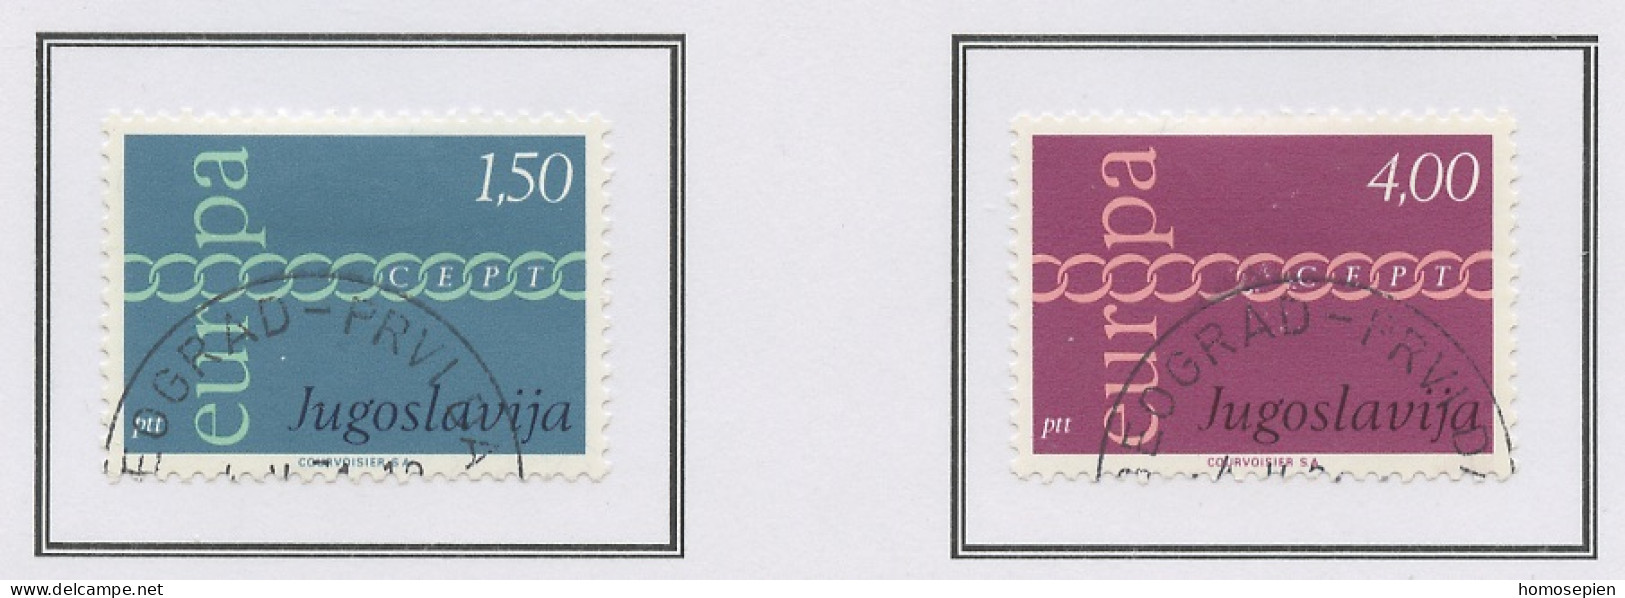 Yougoslavie - Jugoslawien - Yugoslavia 1971 Y&T N°1301 à 1302 - Michel N°1416 à 1417 (o) - EUROPA - Oblitérés